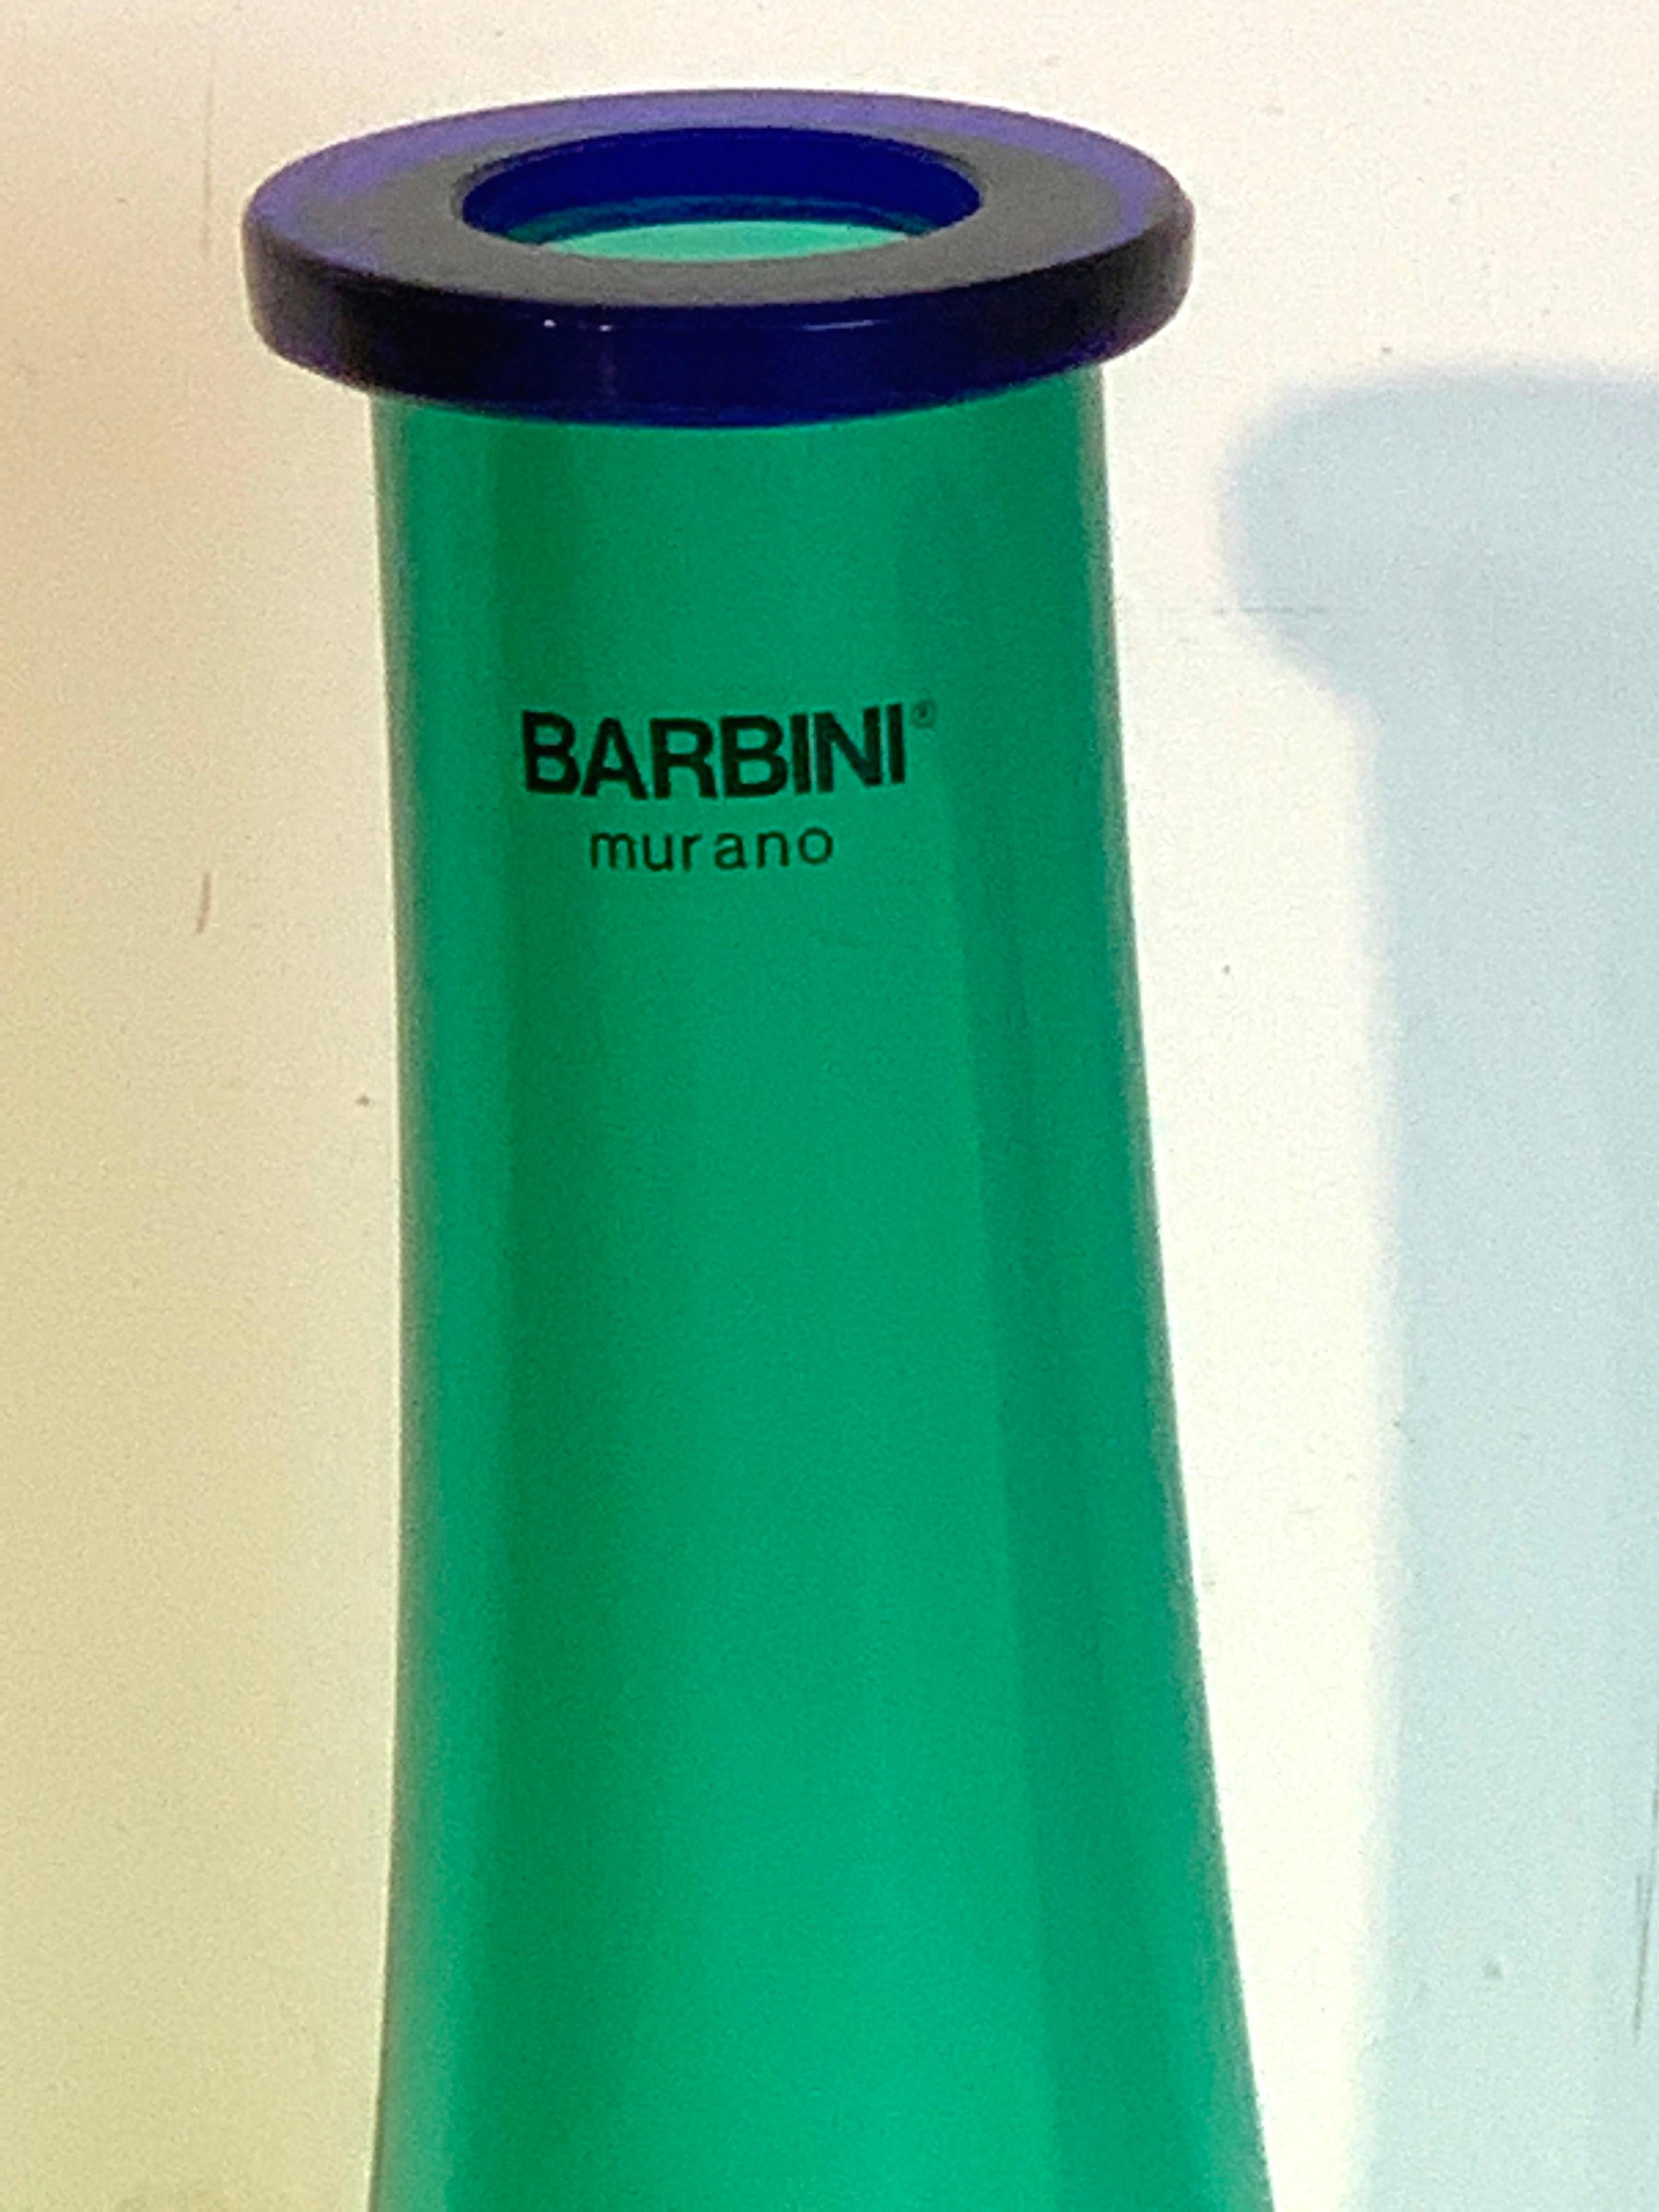 Murano Glass Barbini Murano 